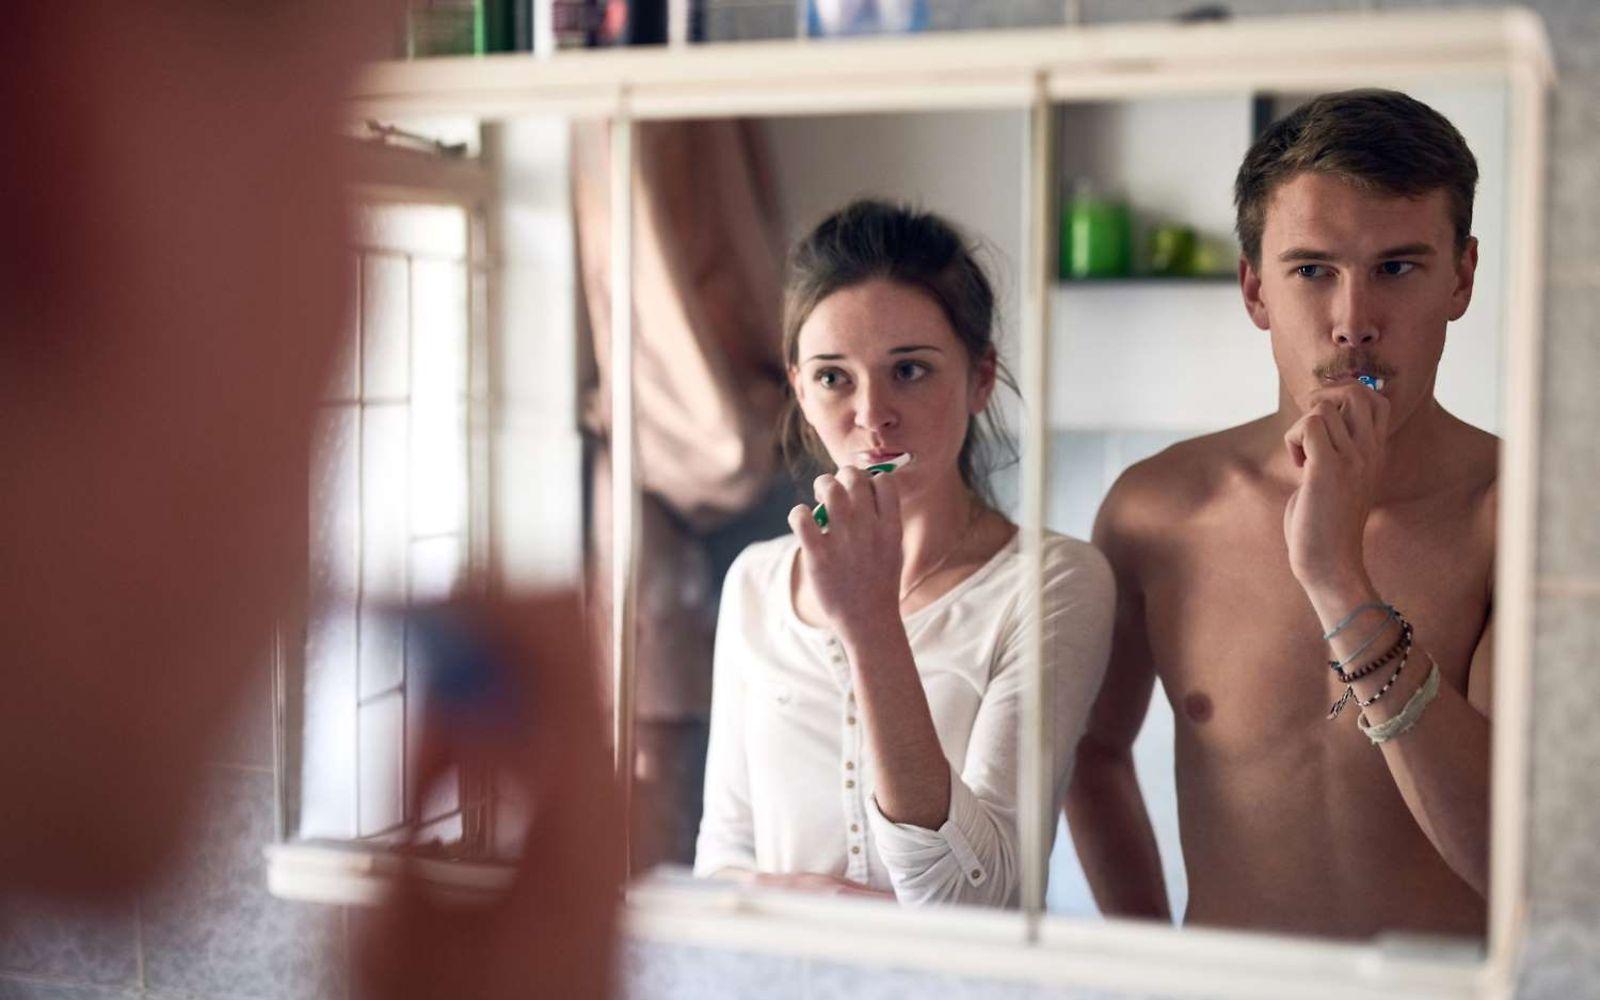 Zahnpflege: Junges Paar putzt gemeinsam vor einem Spiegel die Zähne.